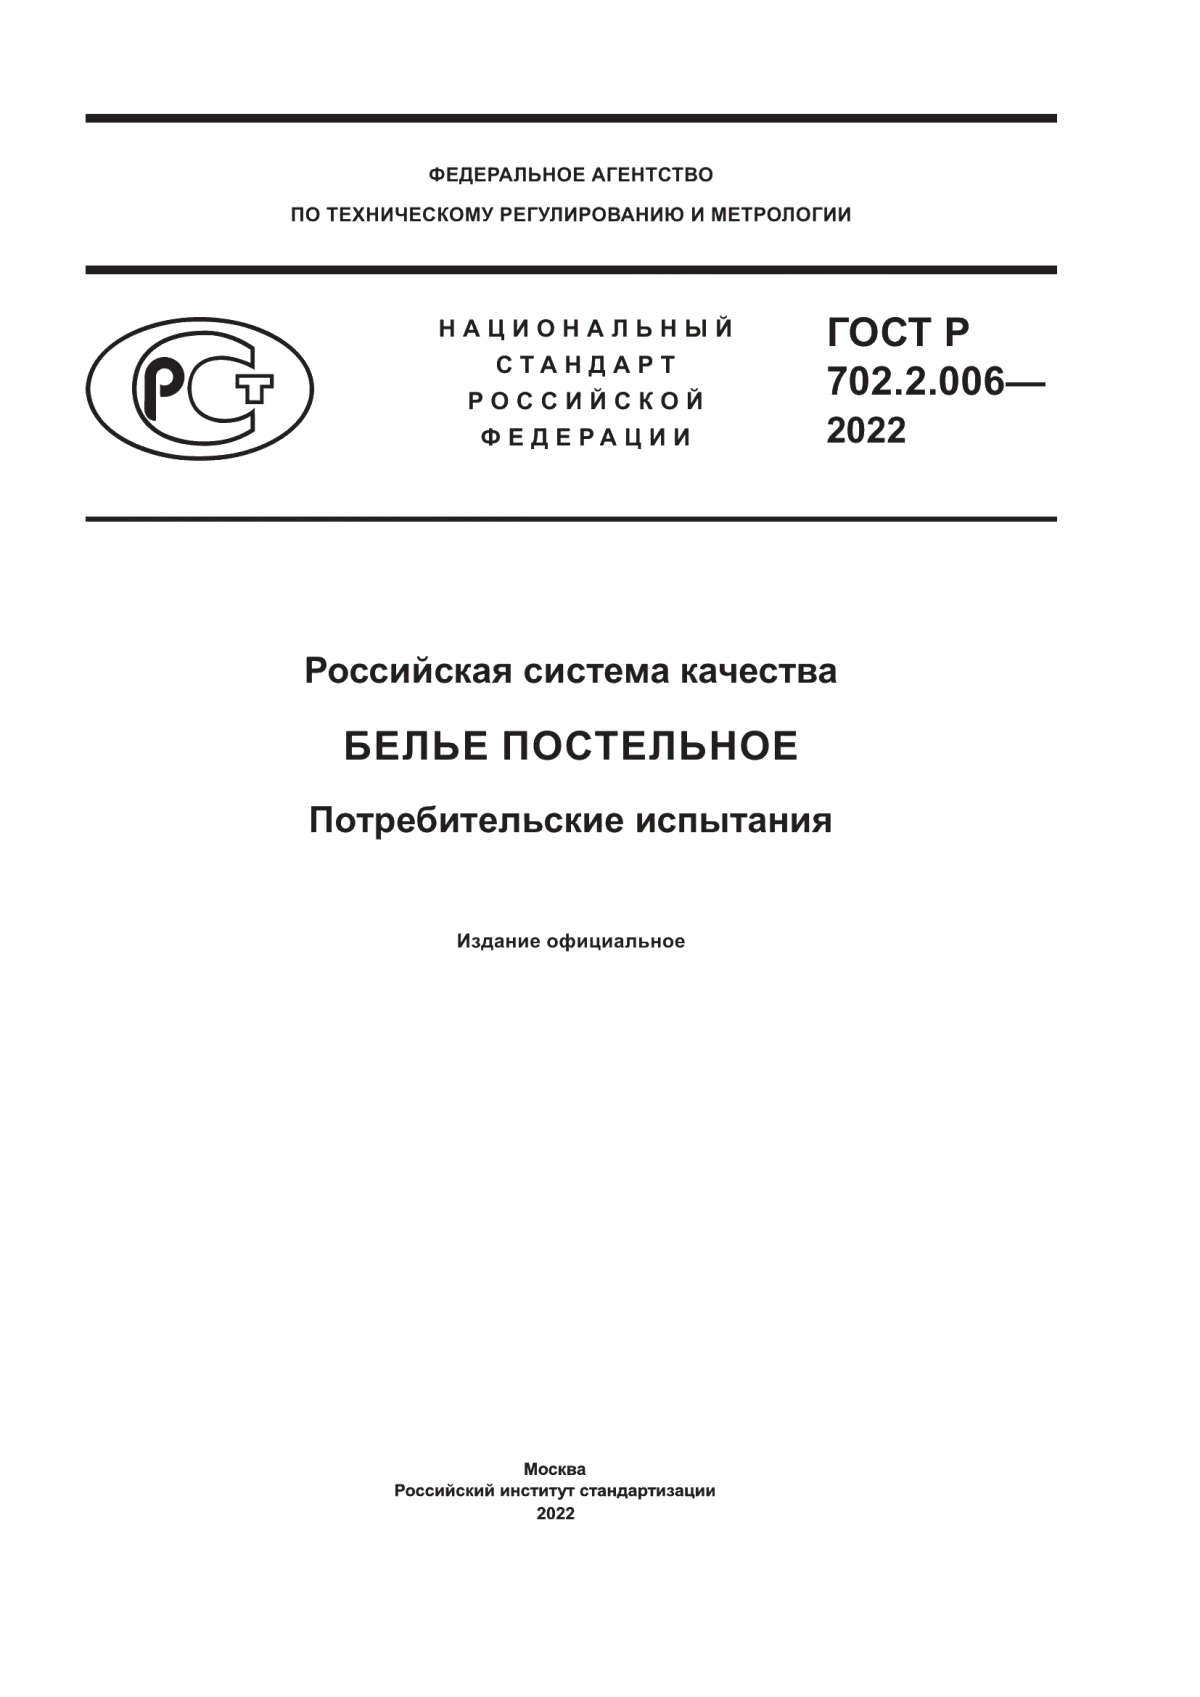 ГОСТ Р 702.2.006-2022 Российская система качества. Белье постельное. Потребительские испытания